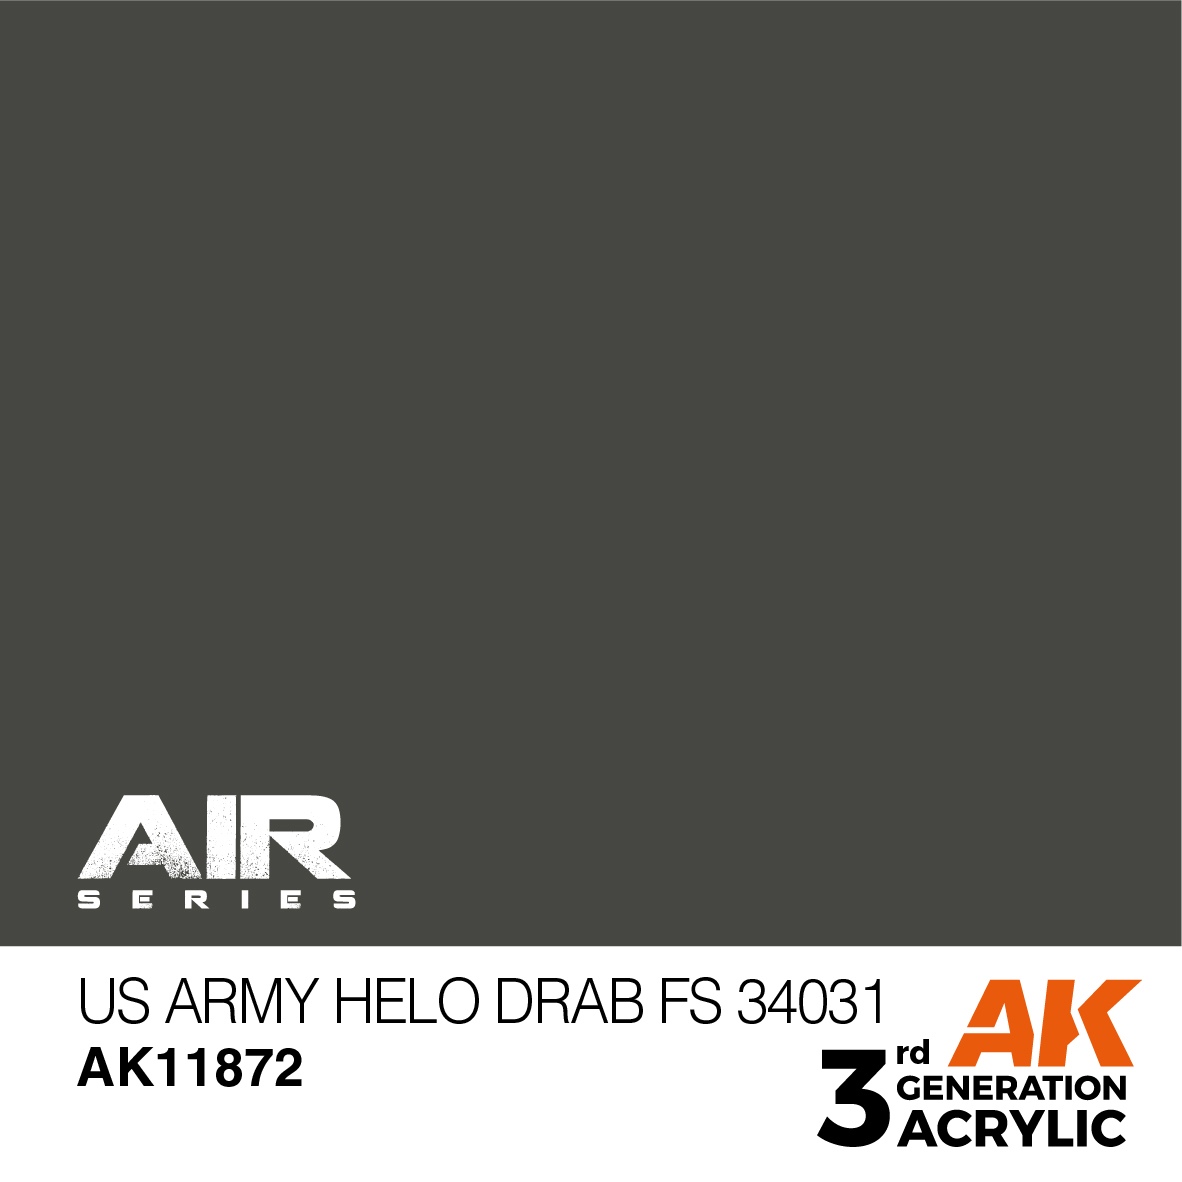 US Army Helo Drab FS 34031 – AIR